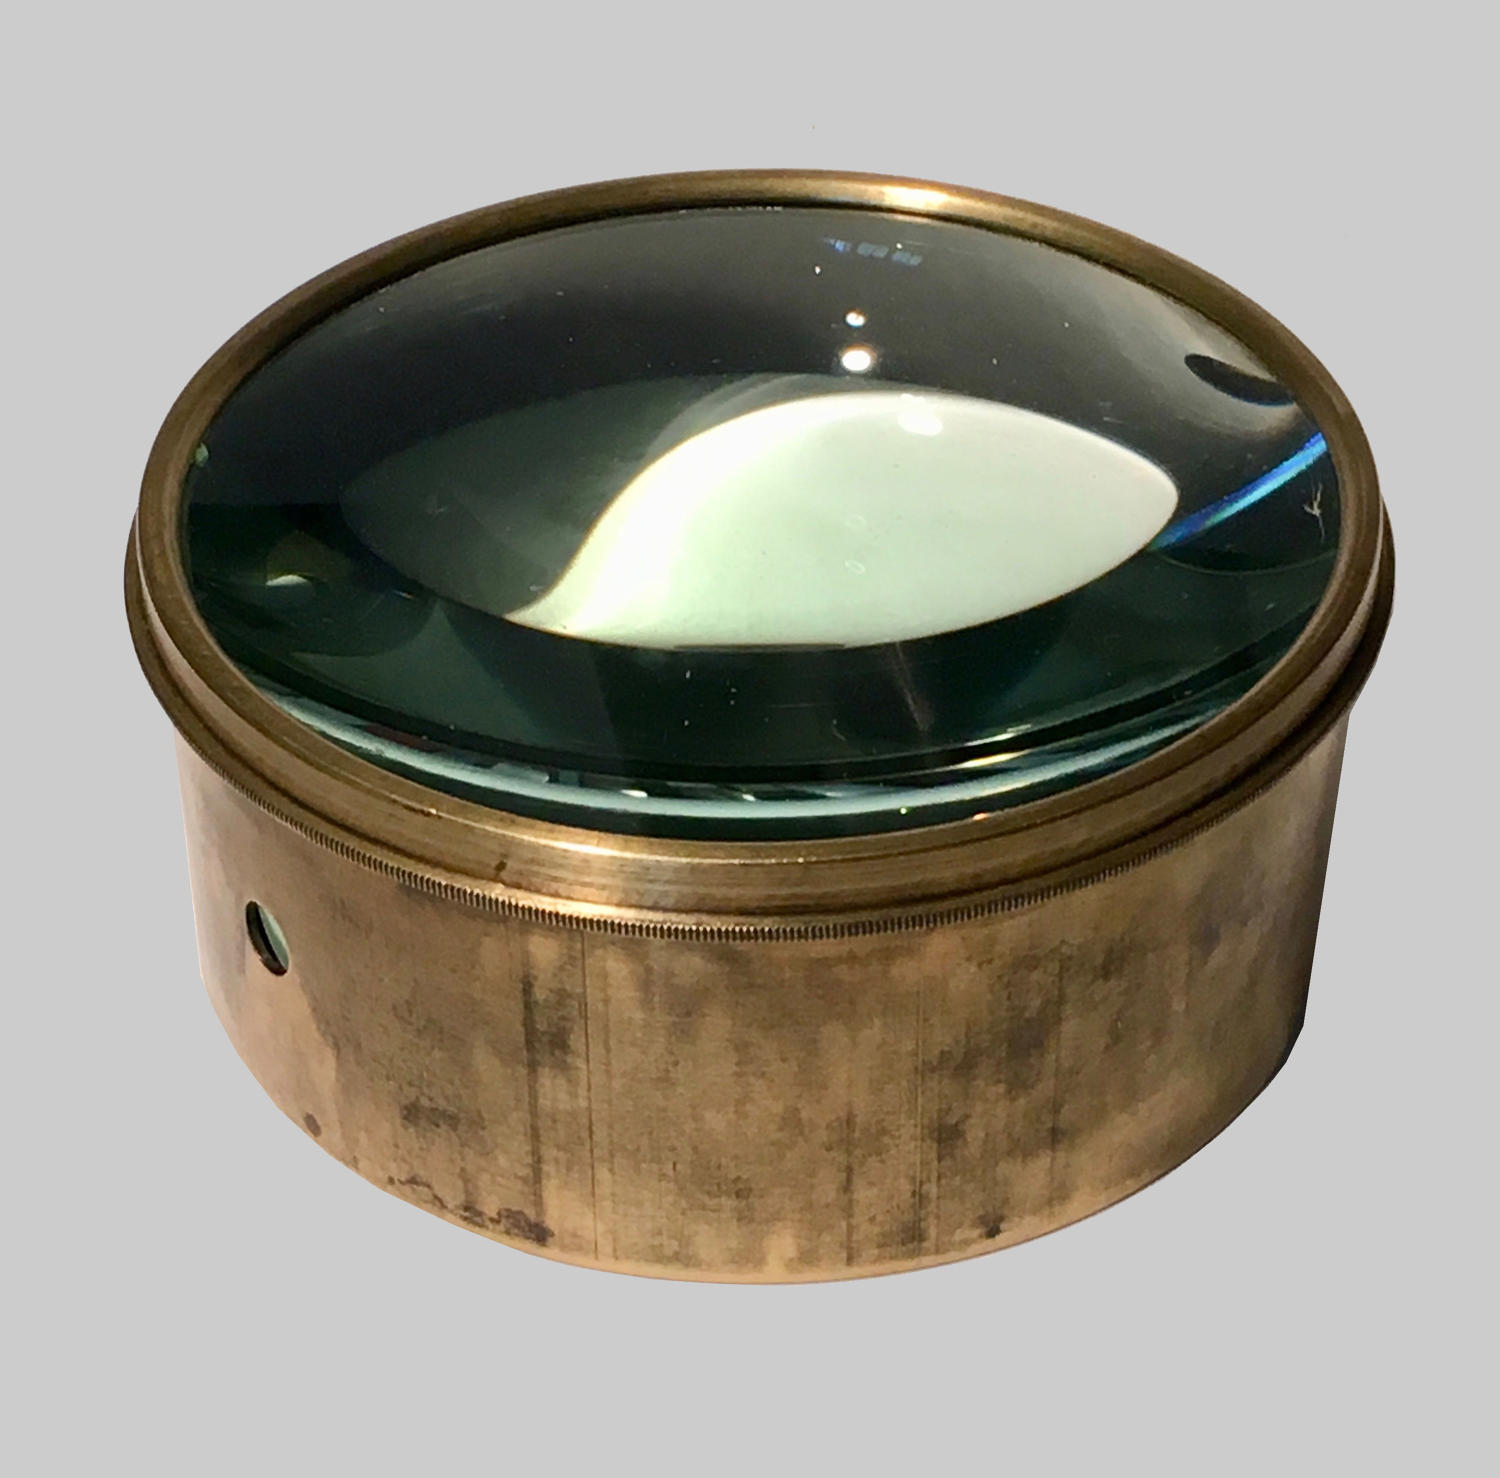 Vintage brass mounted magic lantern condensing lens